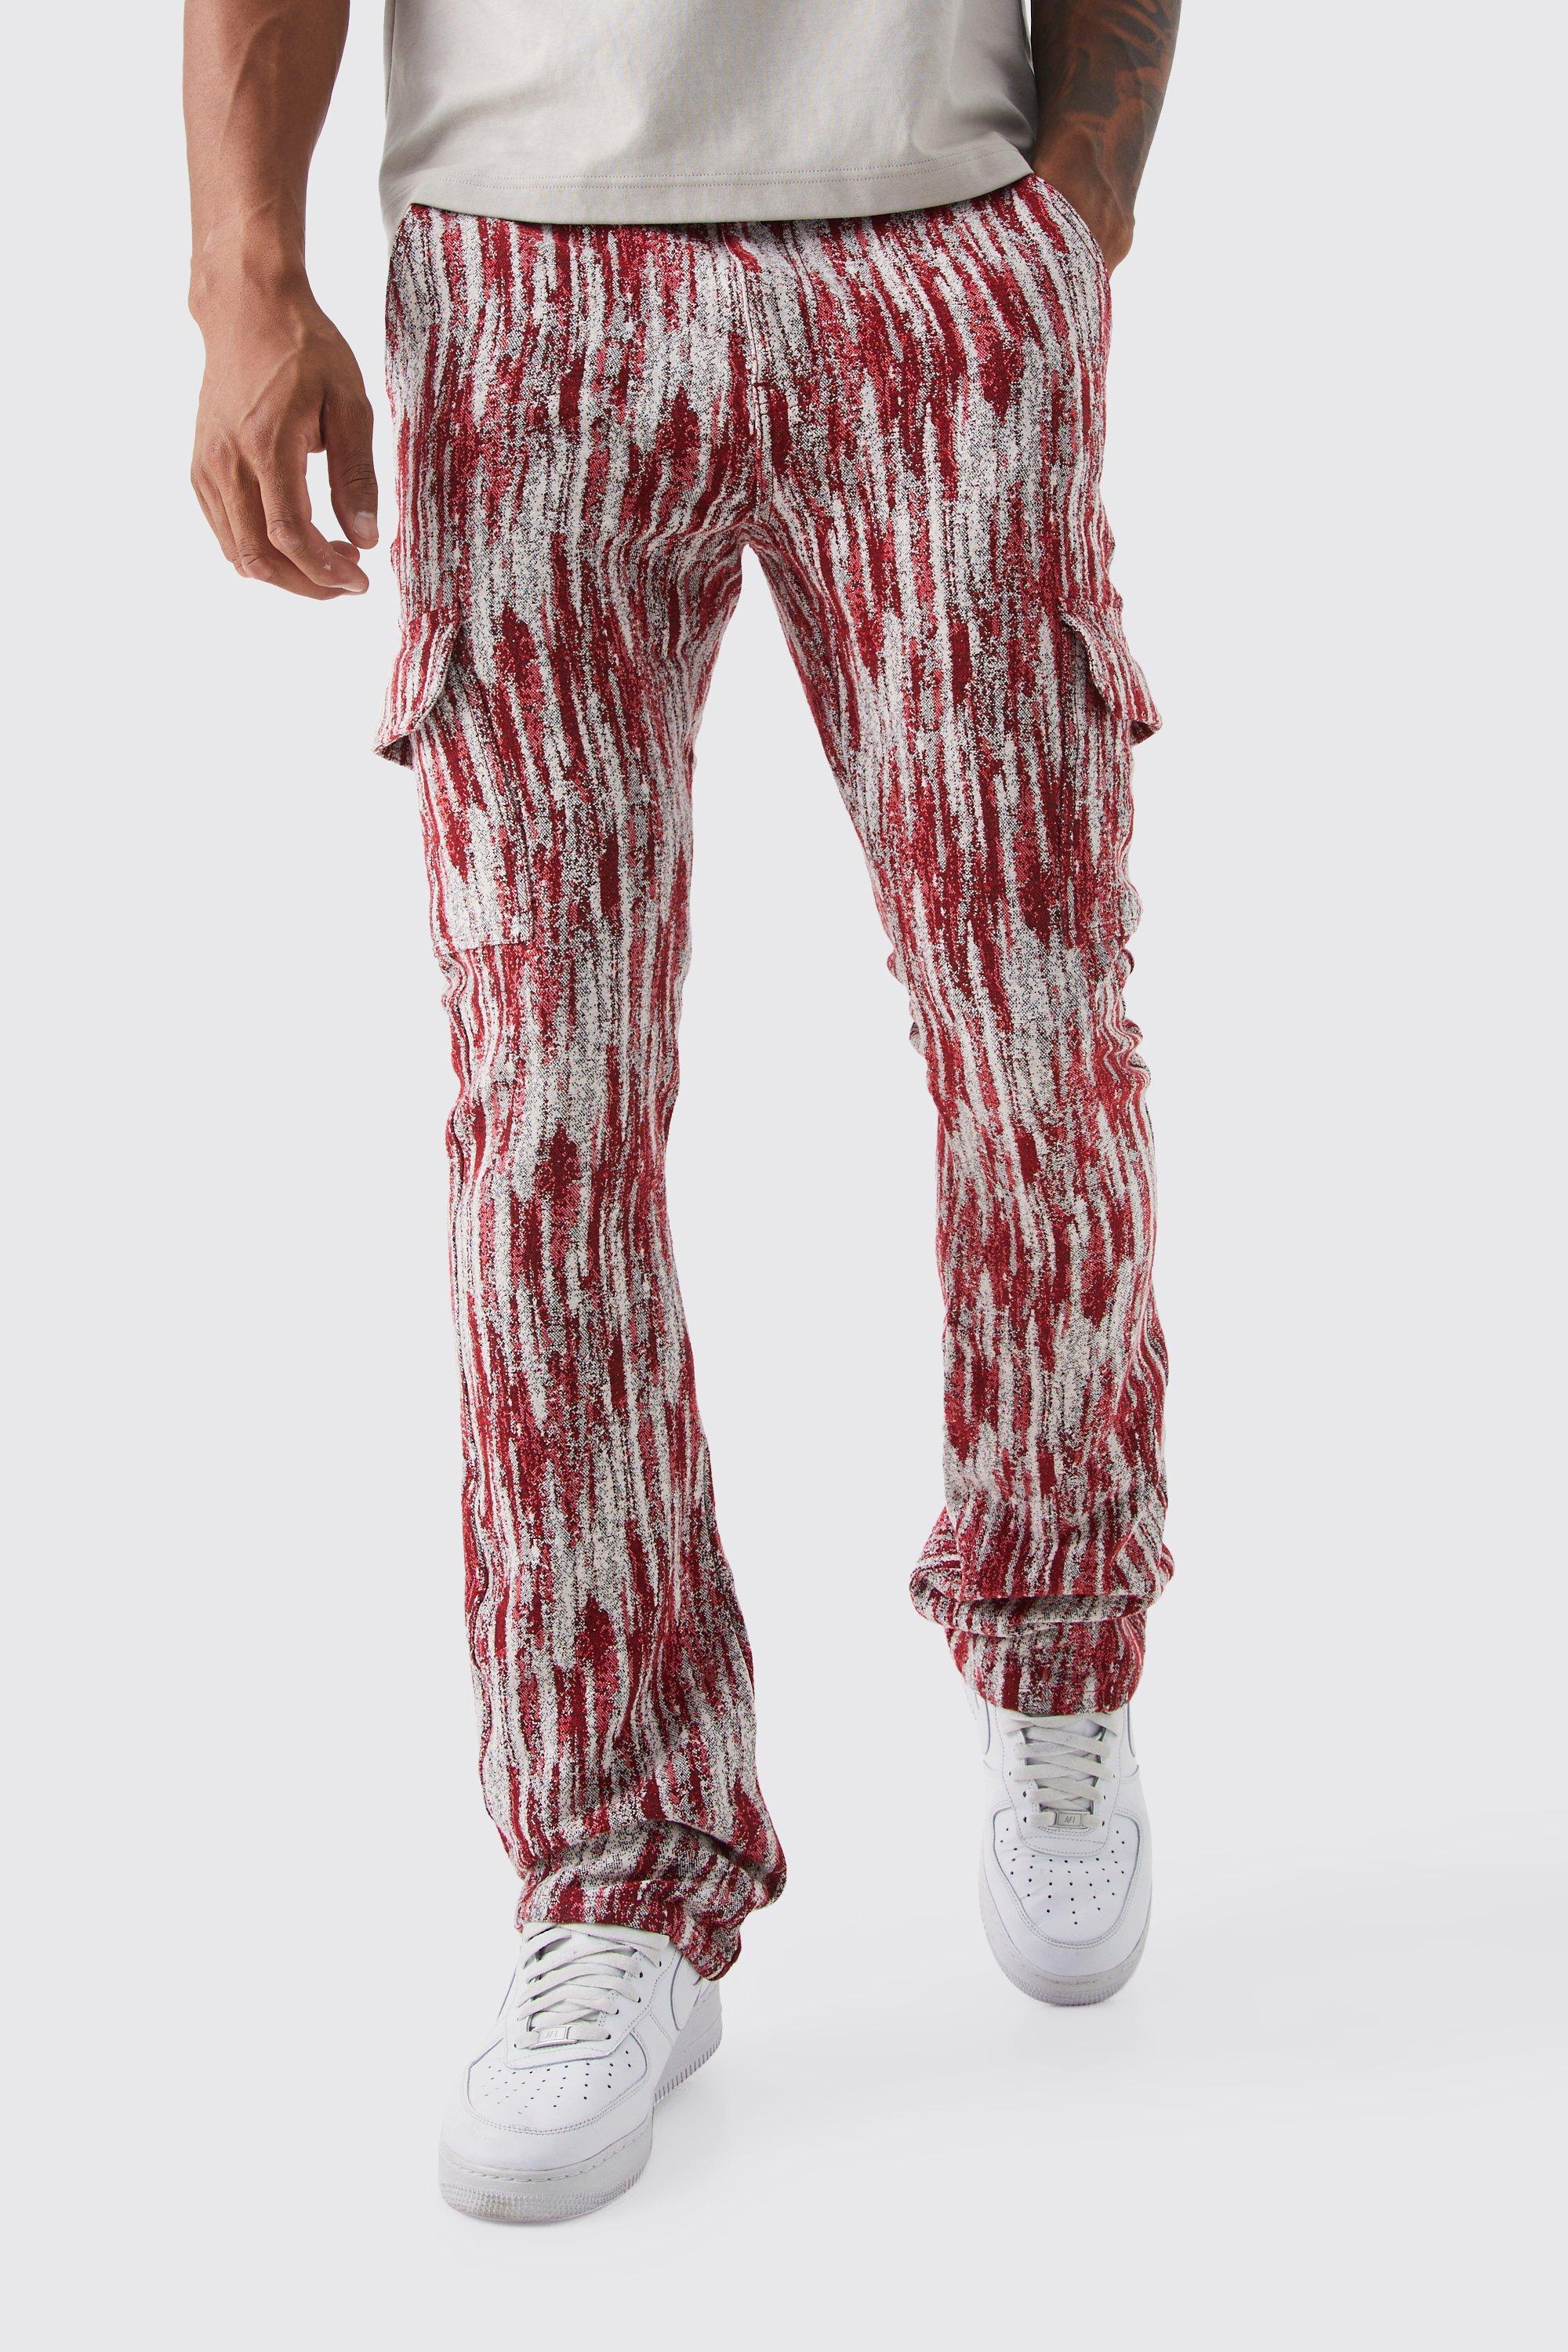 tall - pantalon cargo slim à motif tapisserie homme - rouge - 30, rouge